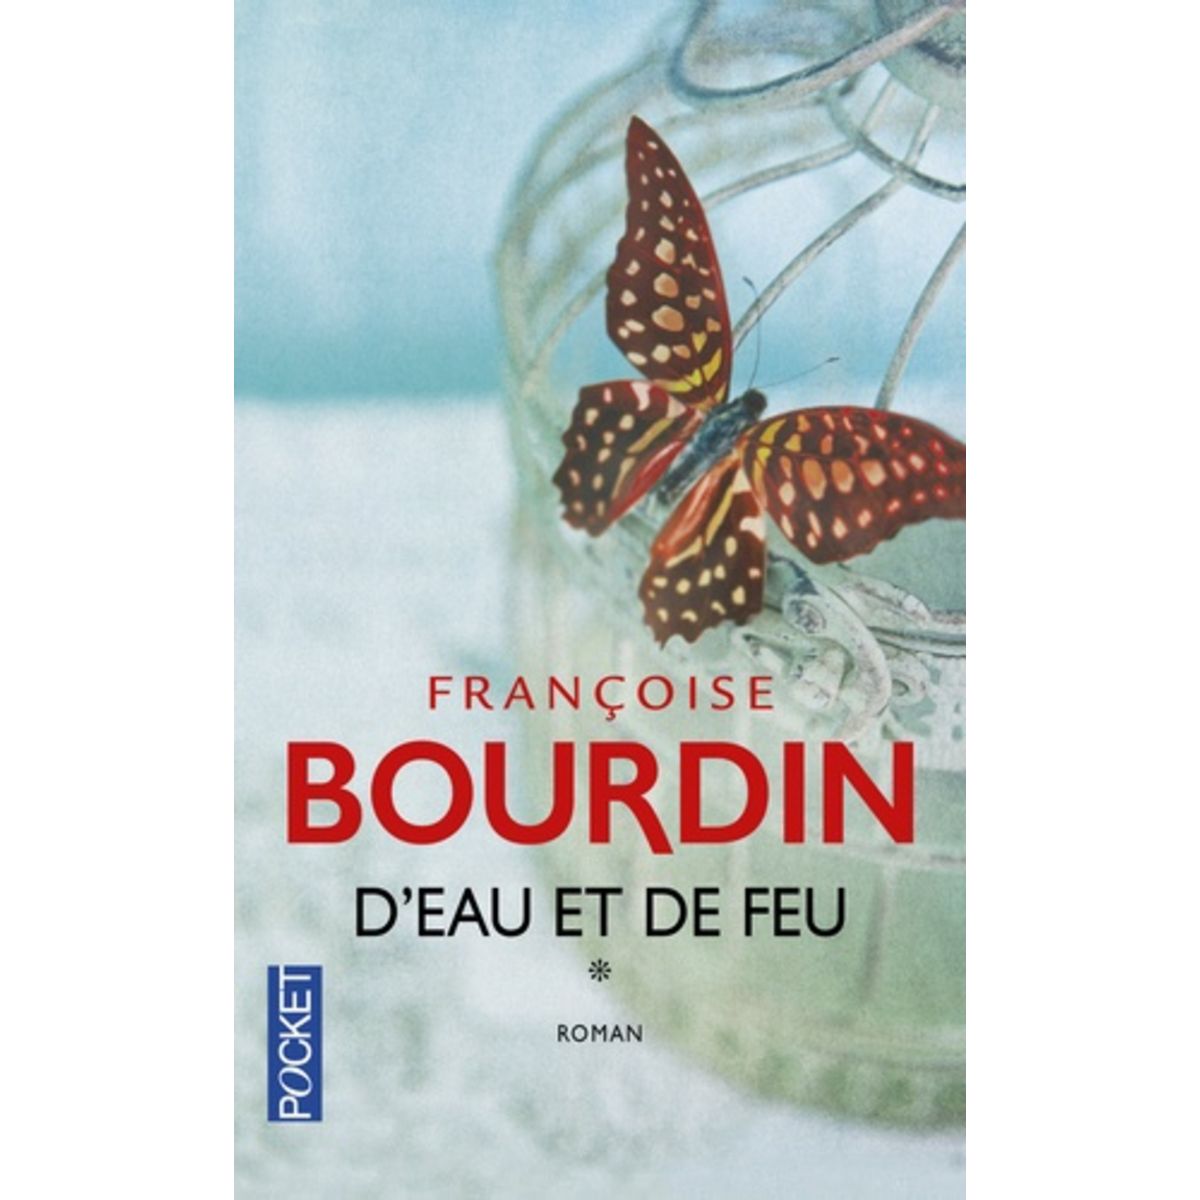  D'EAU ET DE FEU, Bourdin Françoise